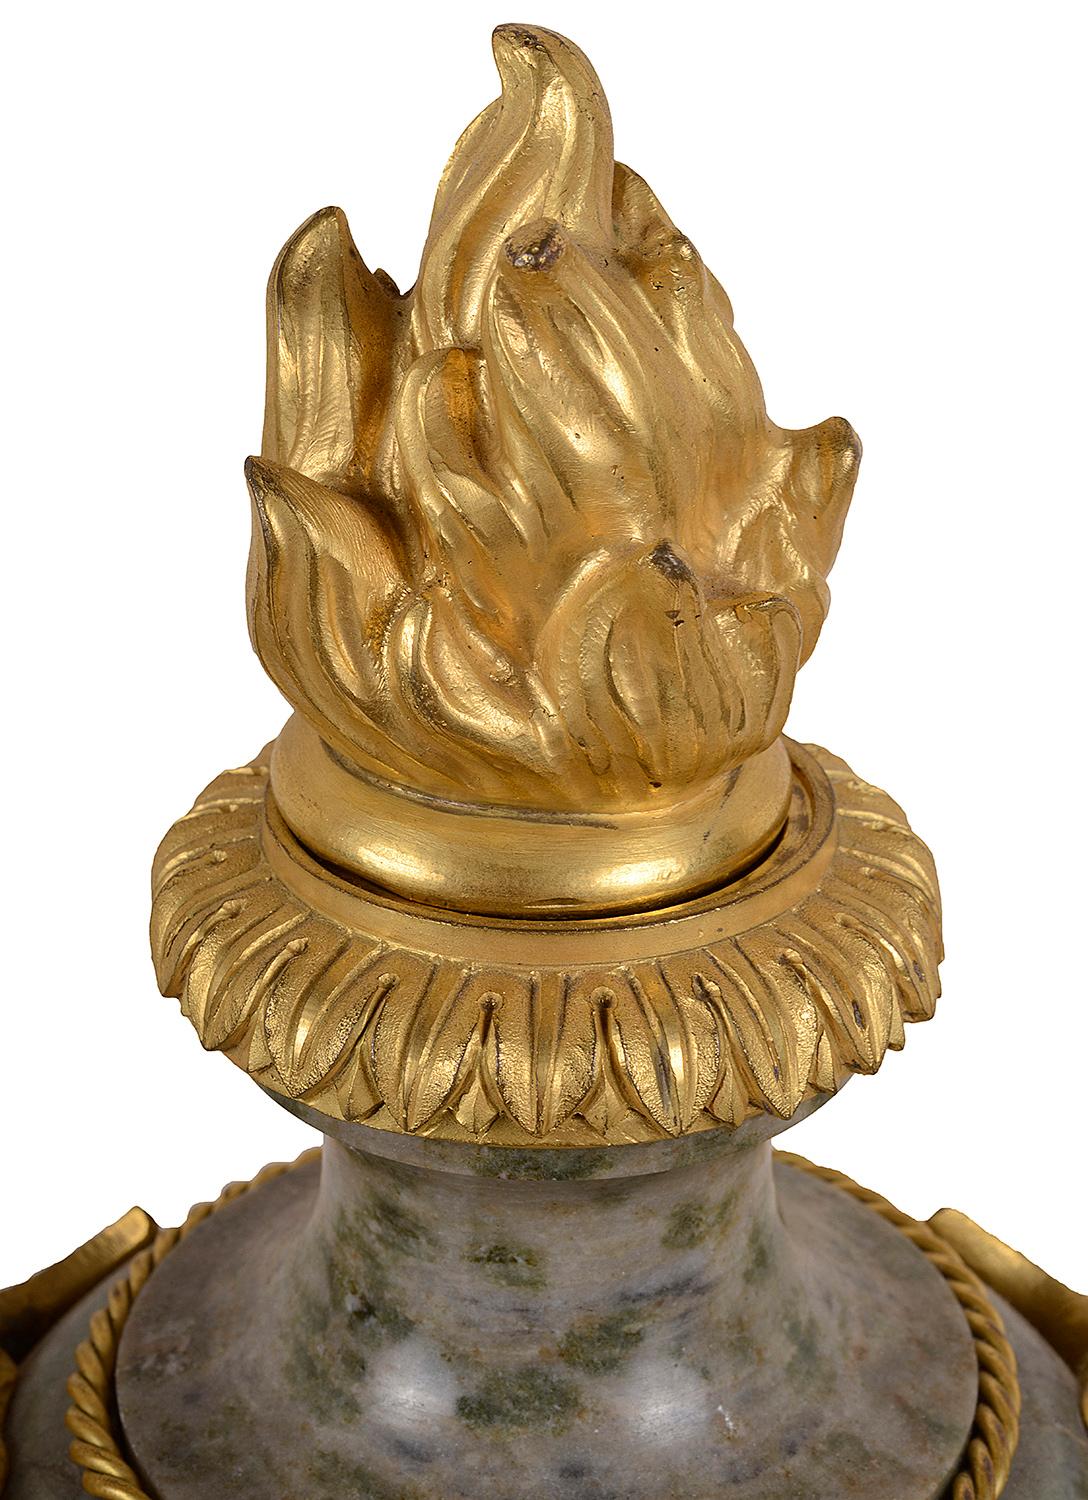 Paire de vases classiques français du XIXe siècle en marbre gris de bonne qualité, avec des finales à flamme en bronze doré et des montures en forme de masques mythiques.